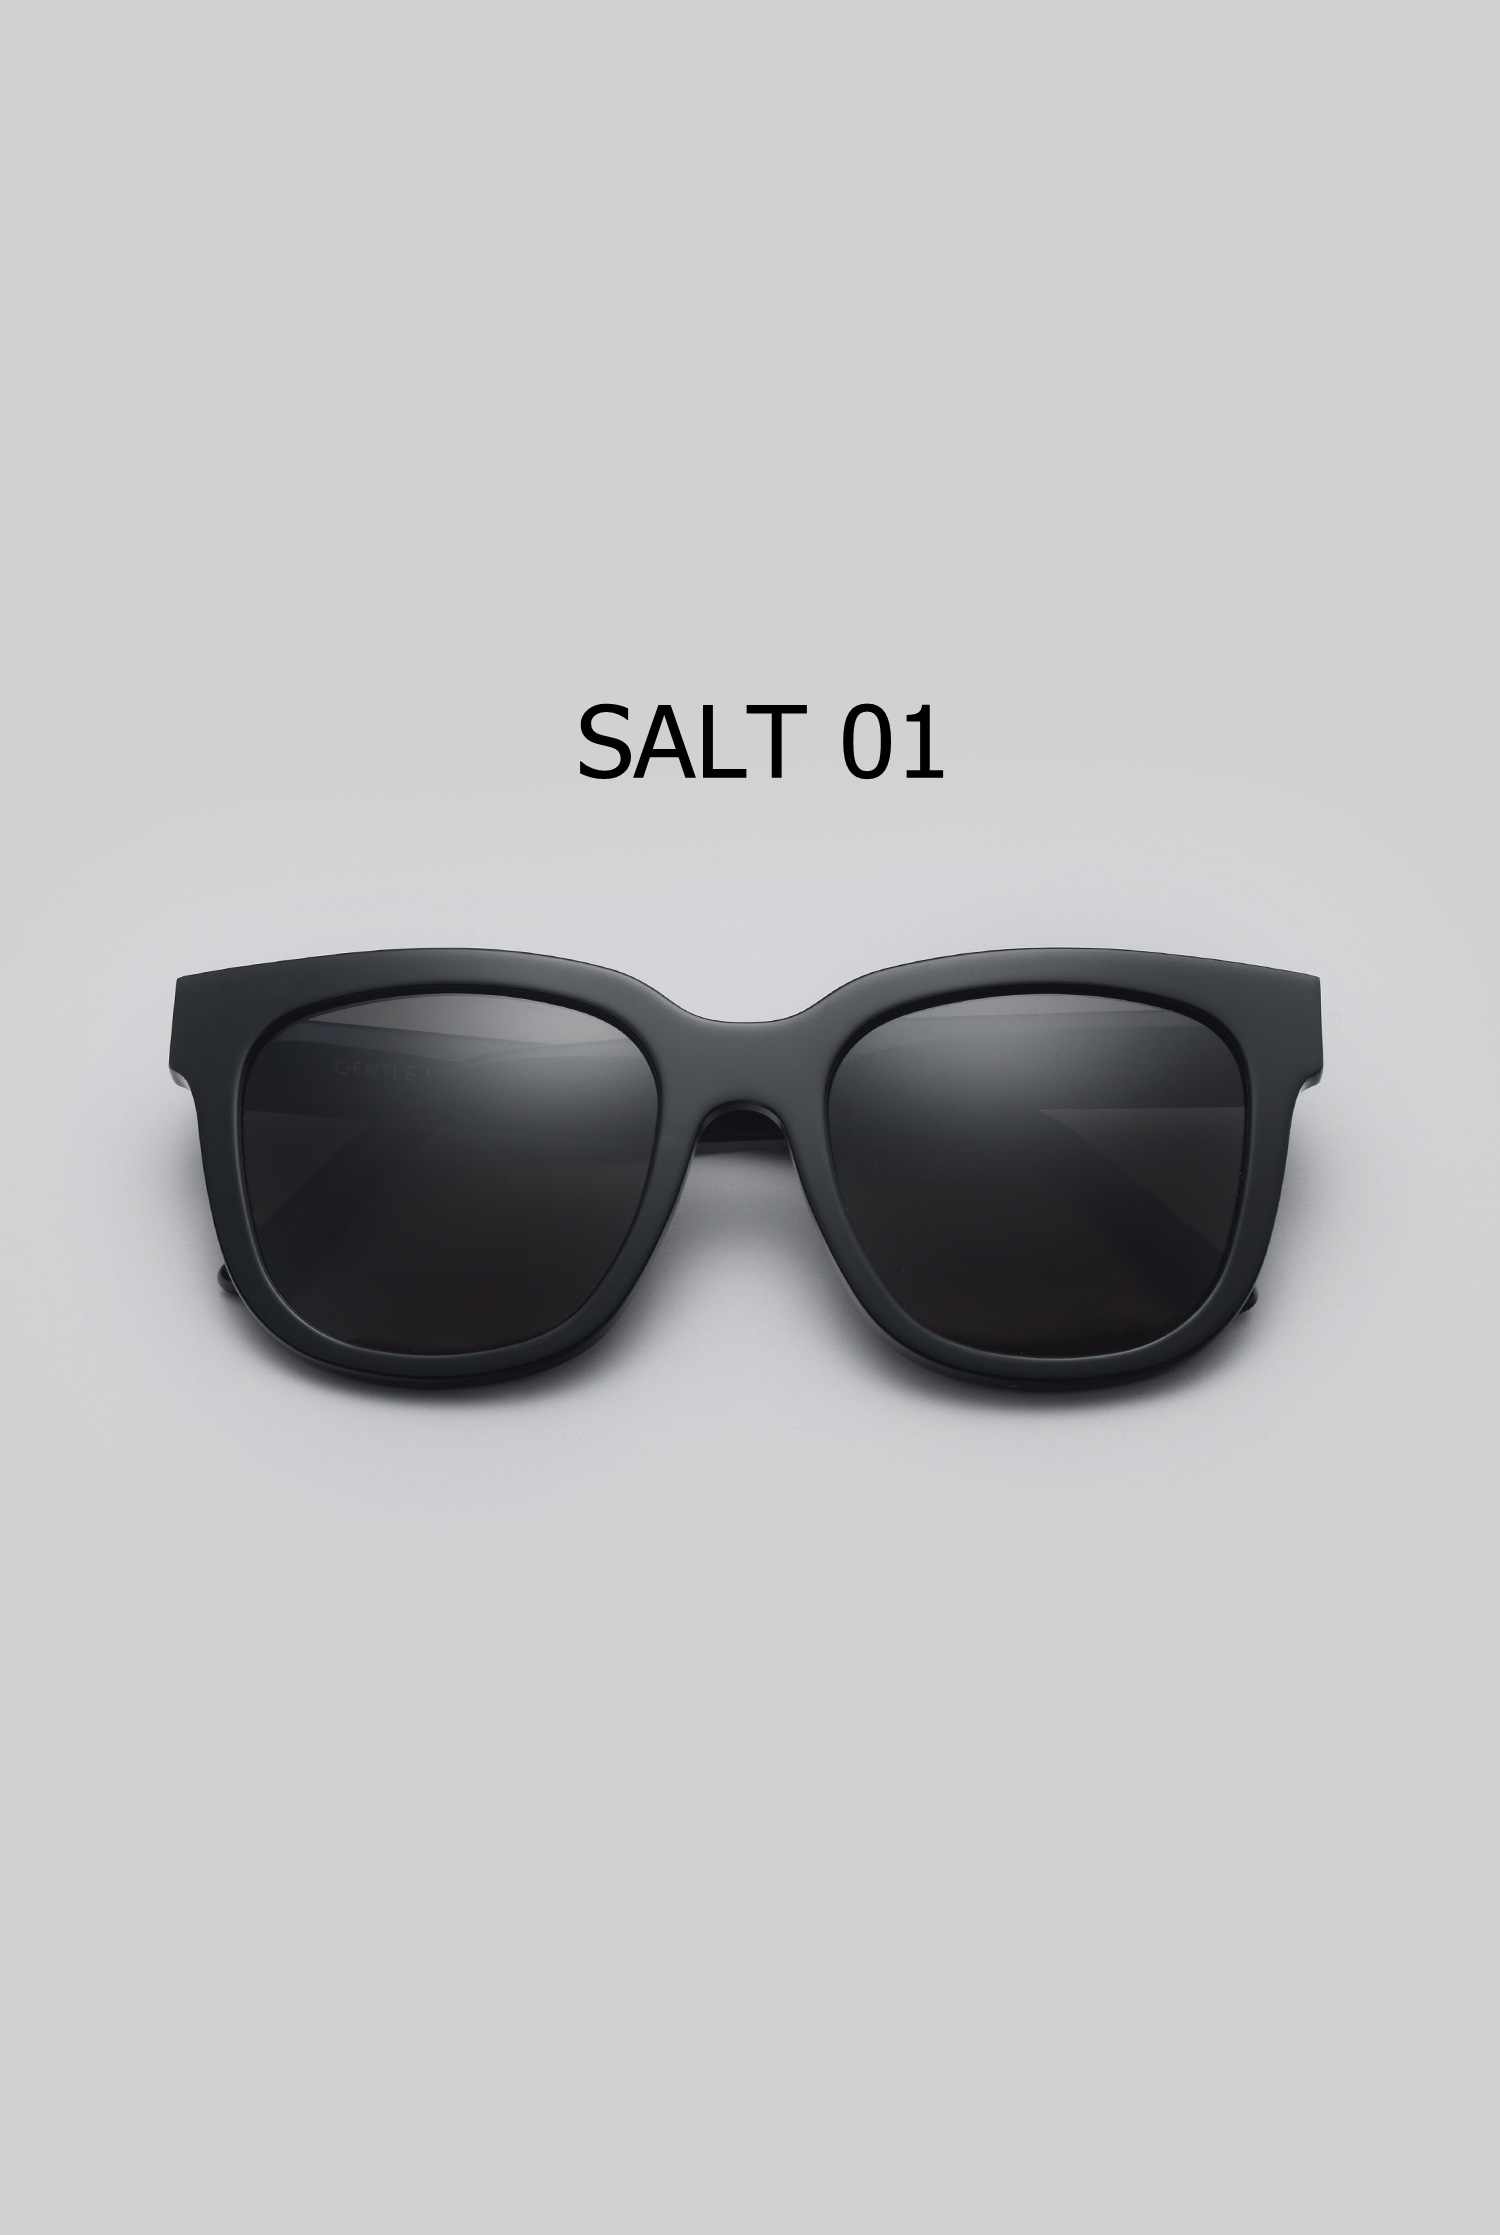 SALT 01 